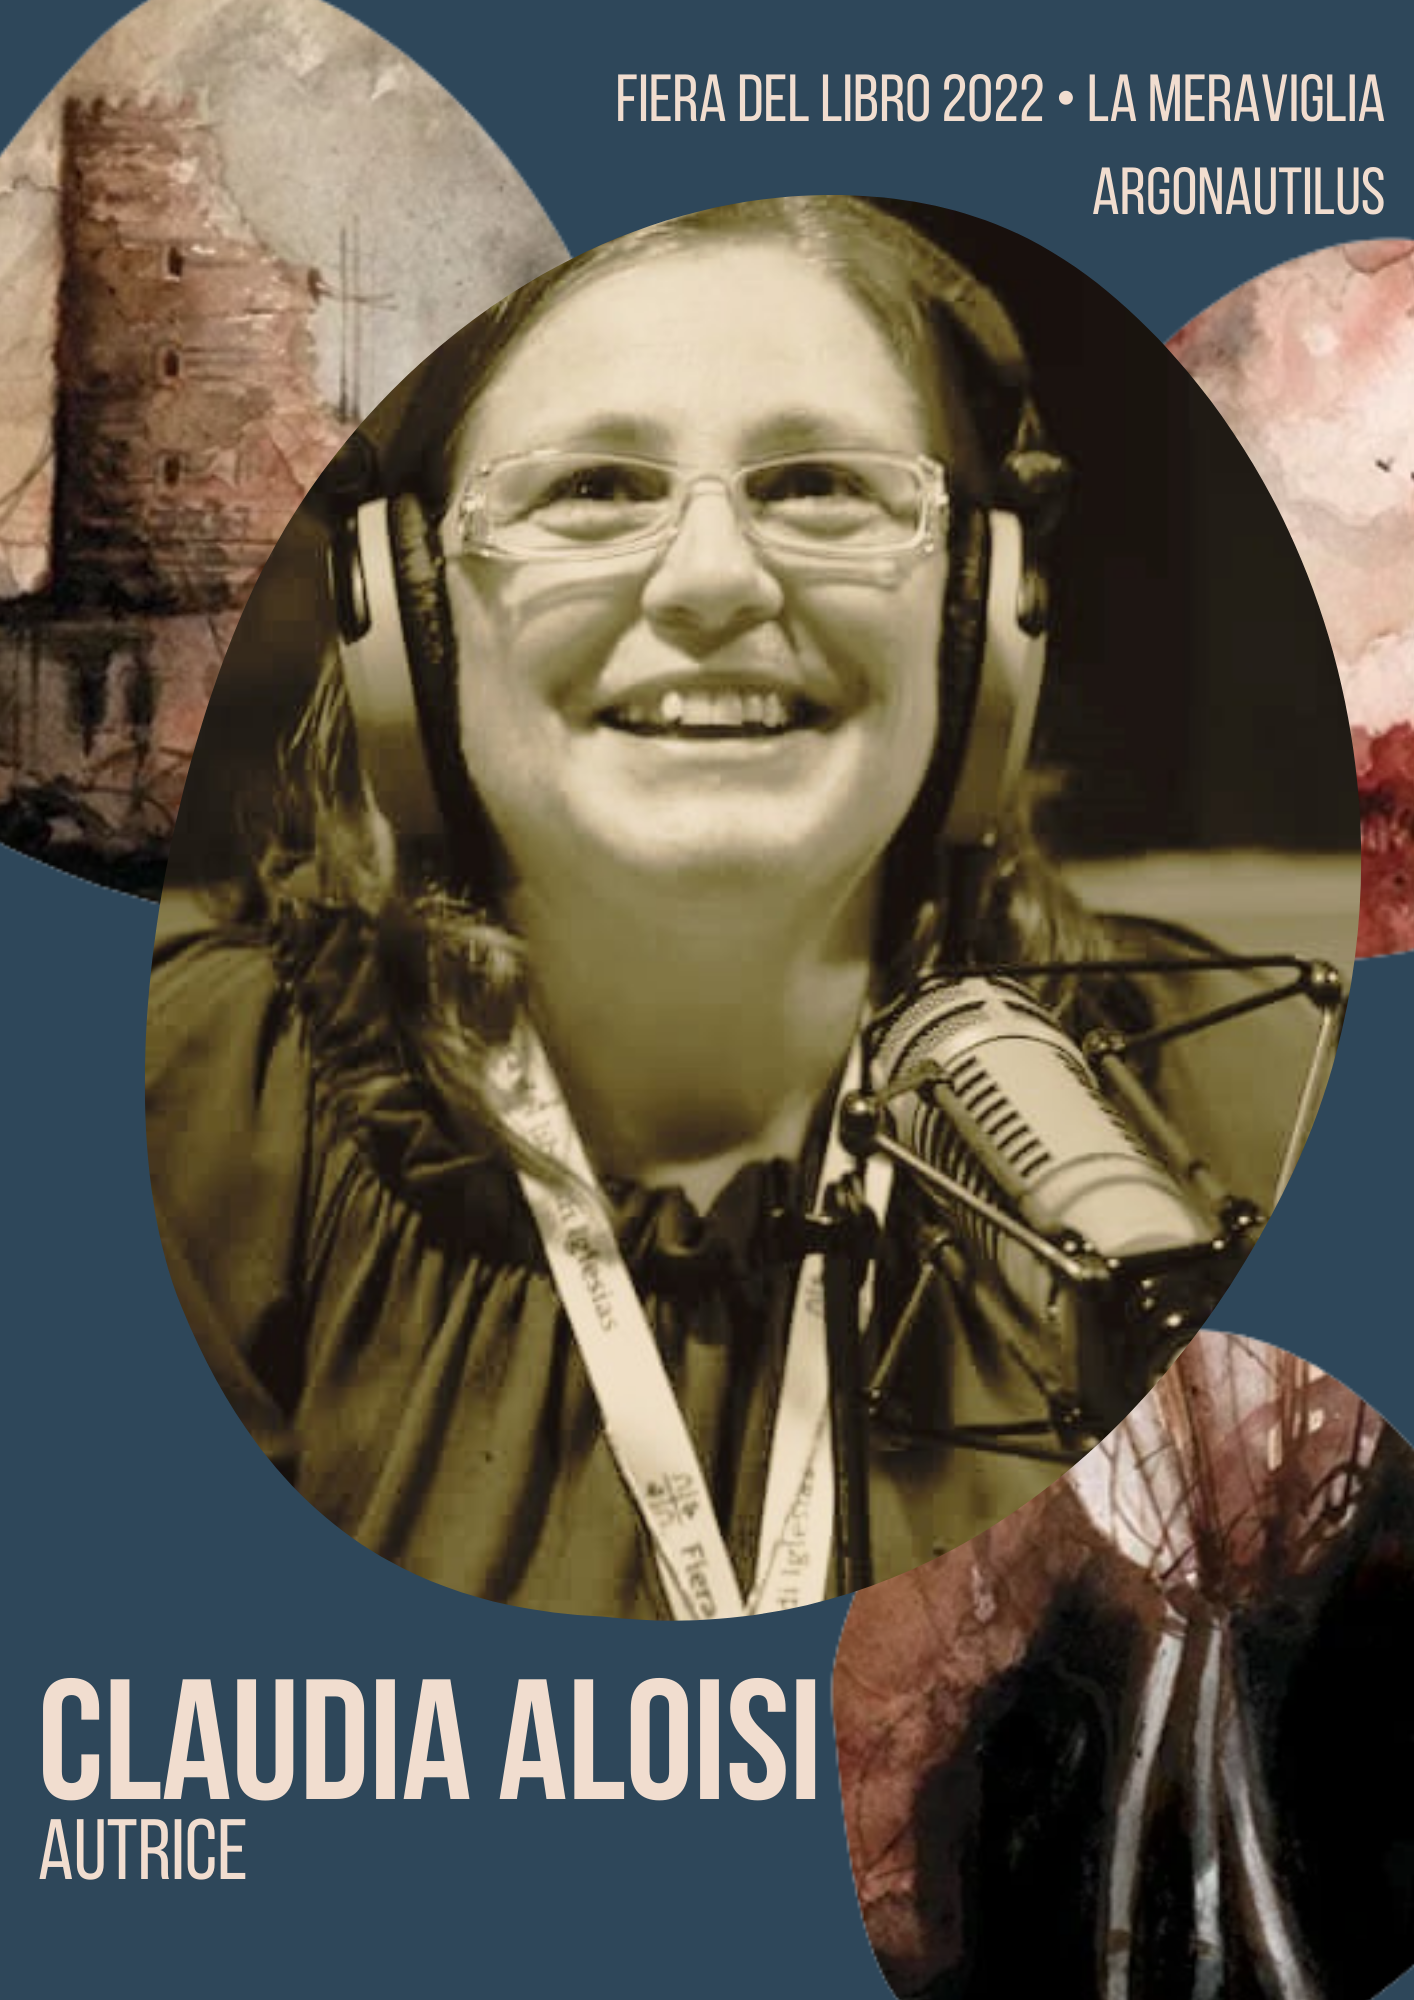 Claudia Aloisi